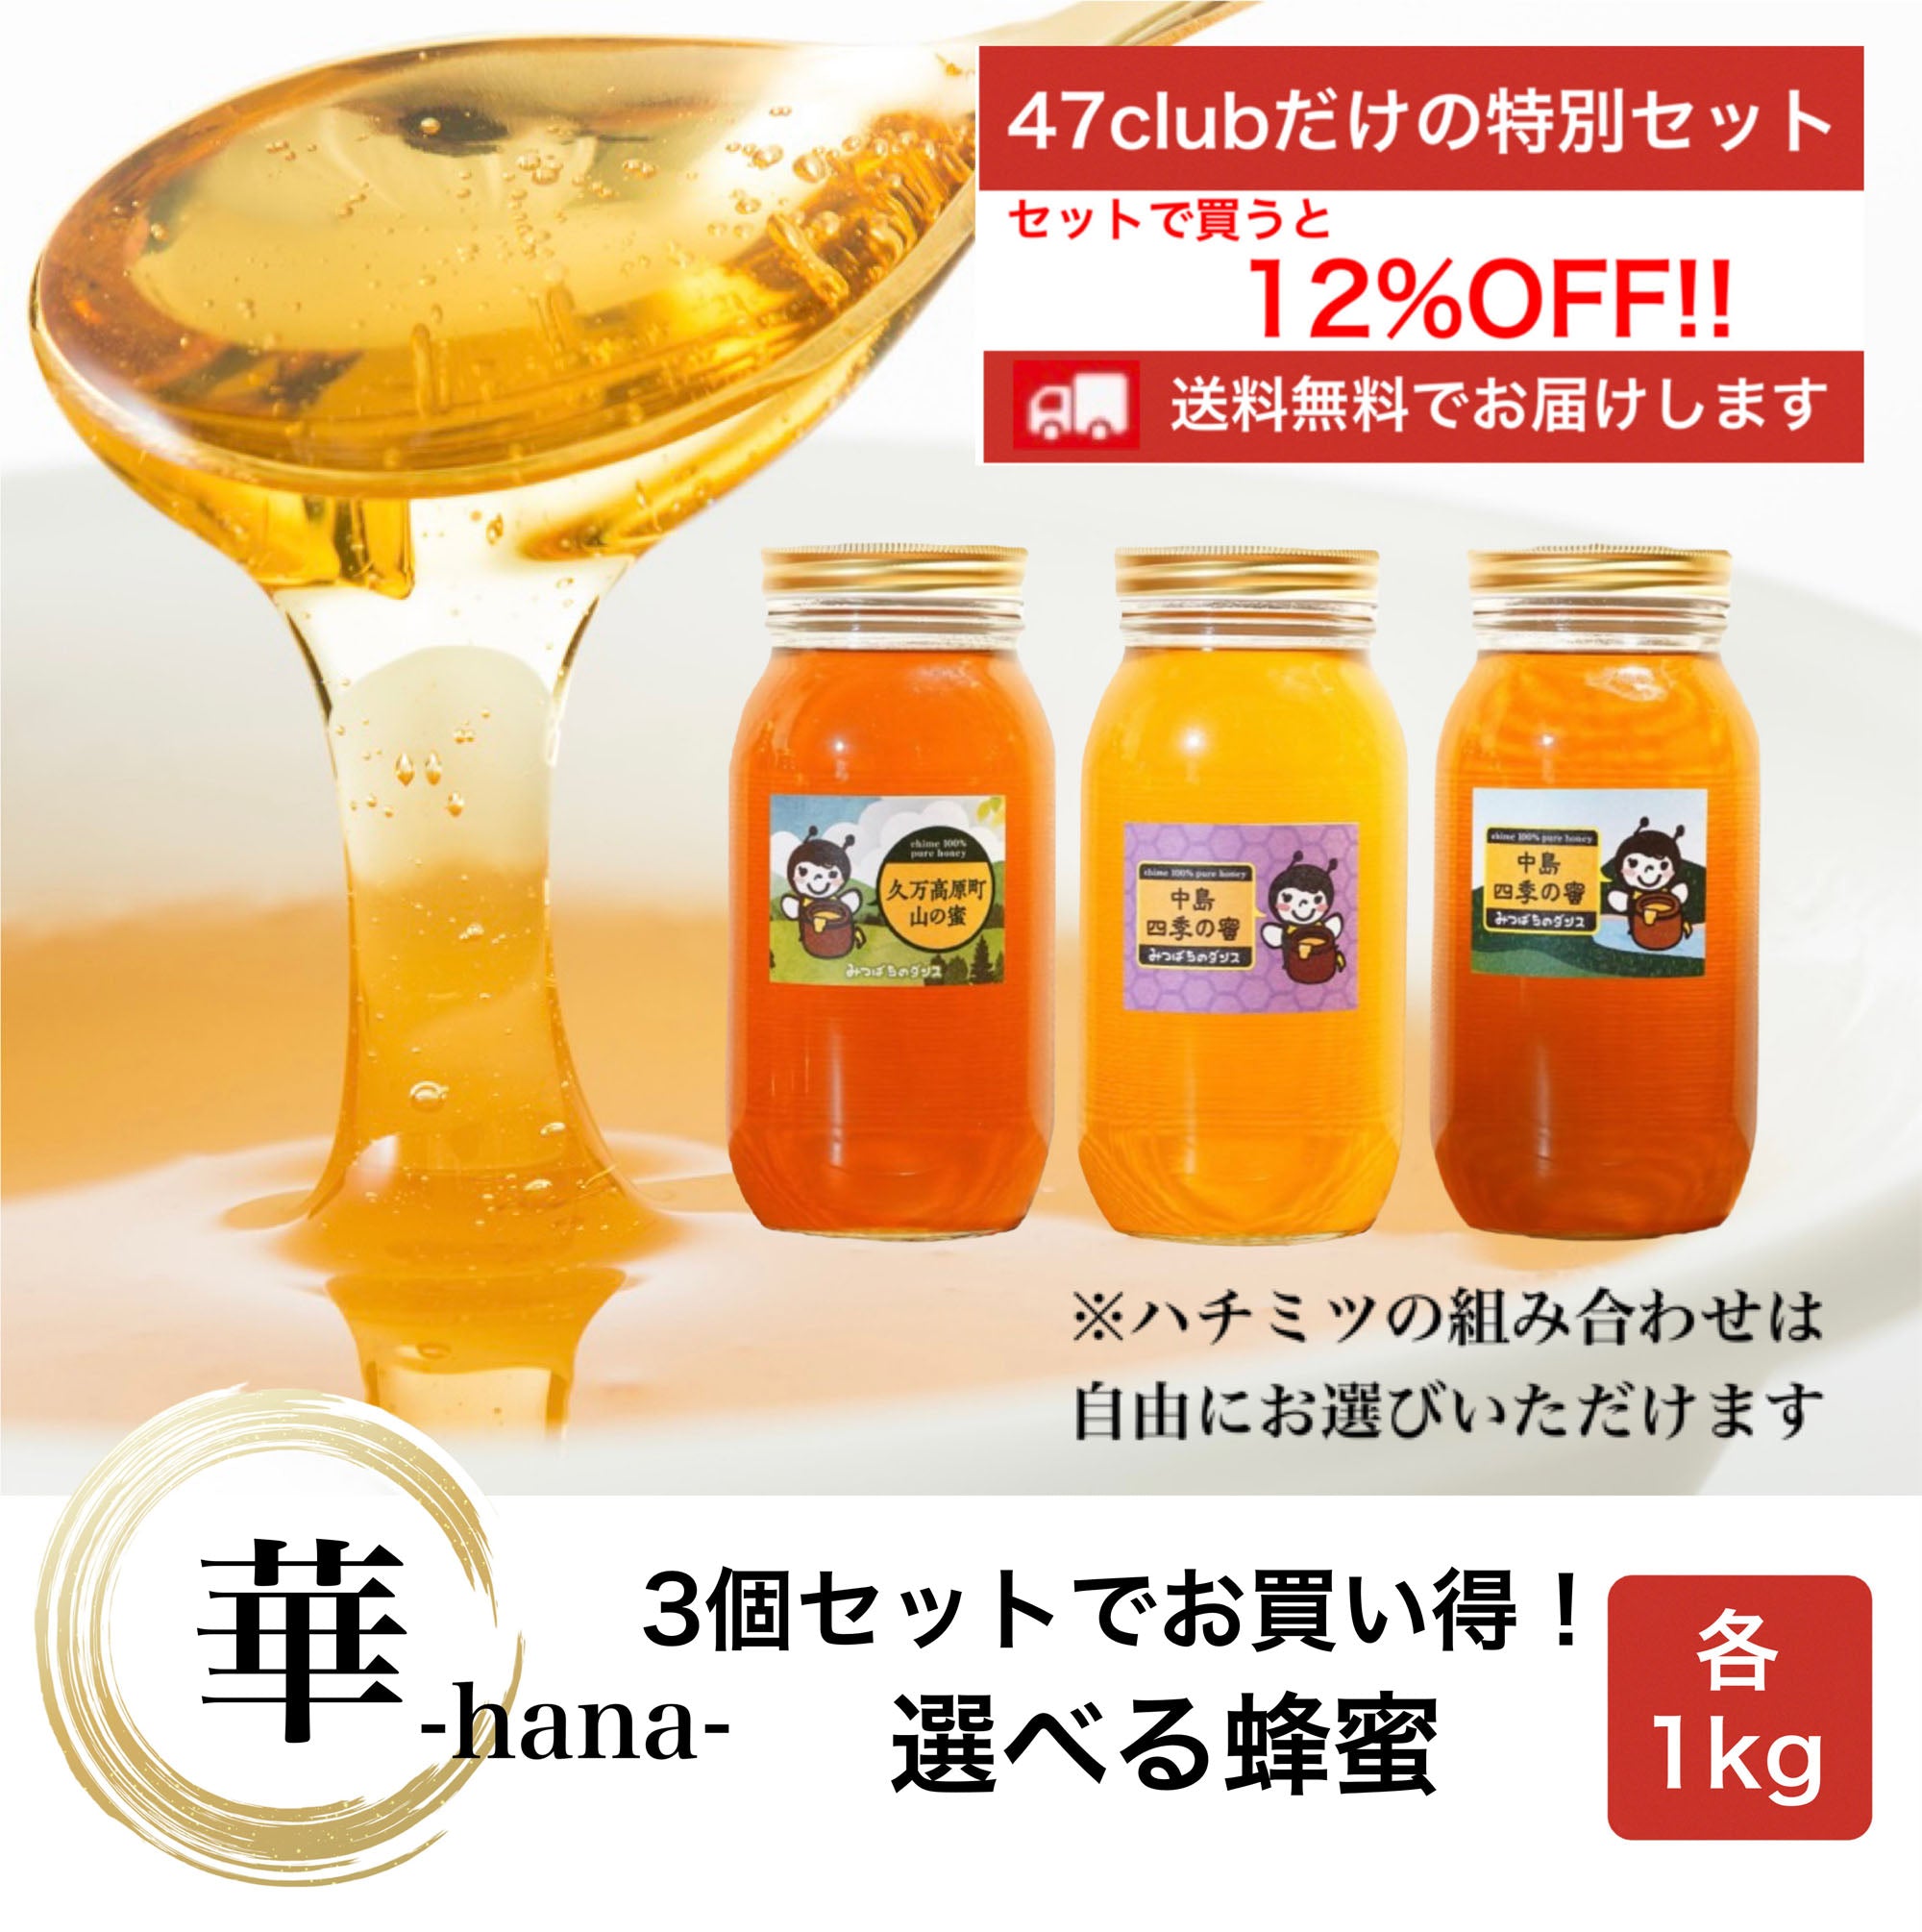 華-hana-　3個セットでお買い得！　選べる蜂蜜セット　各1kg